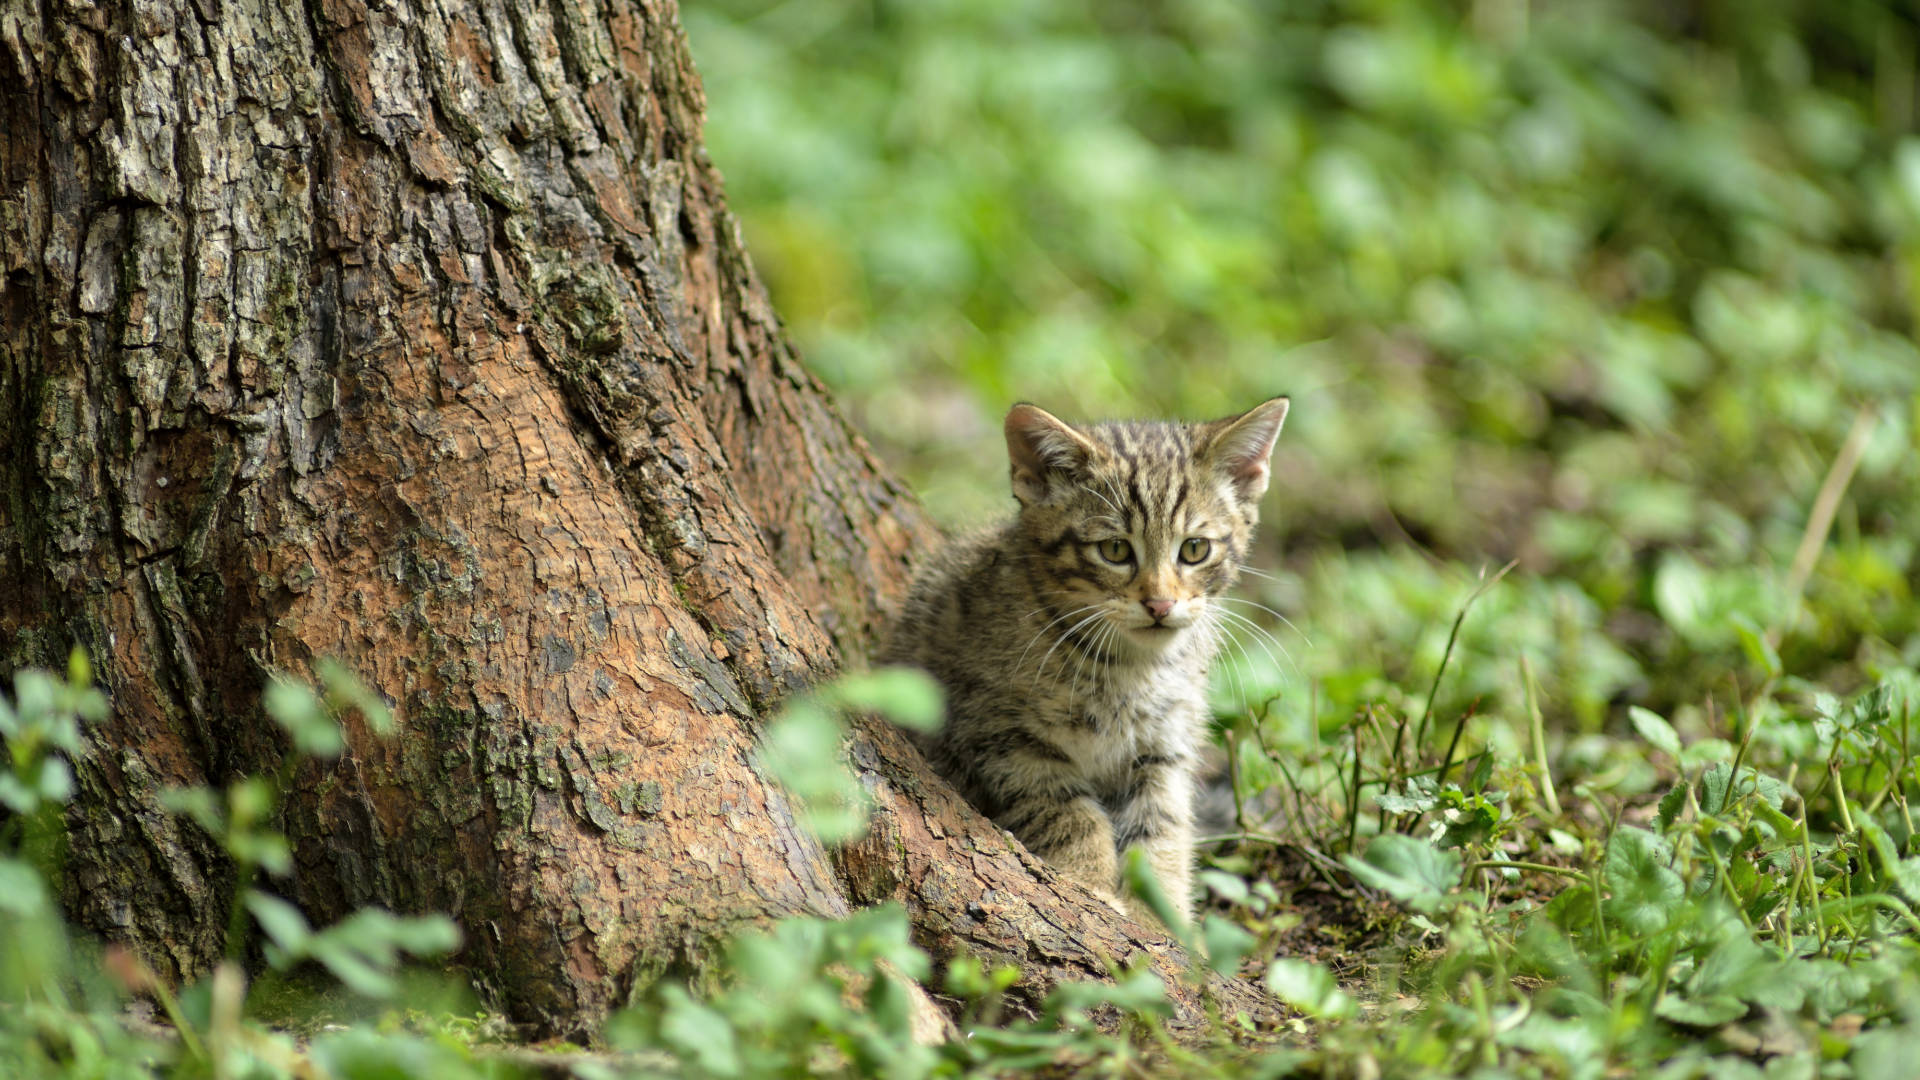 Wildkätzchen an Baum auf Wald-Boden (Foto: Thomas Stephan)